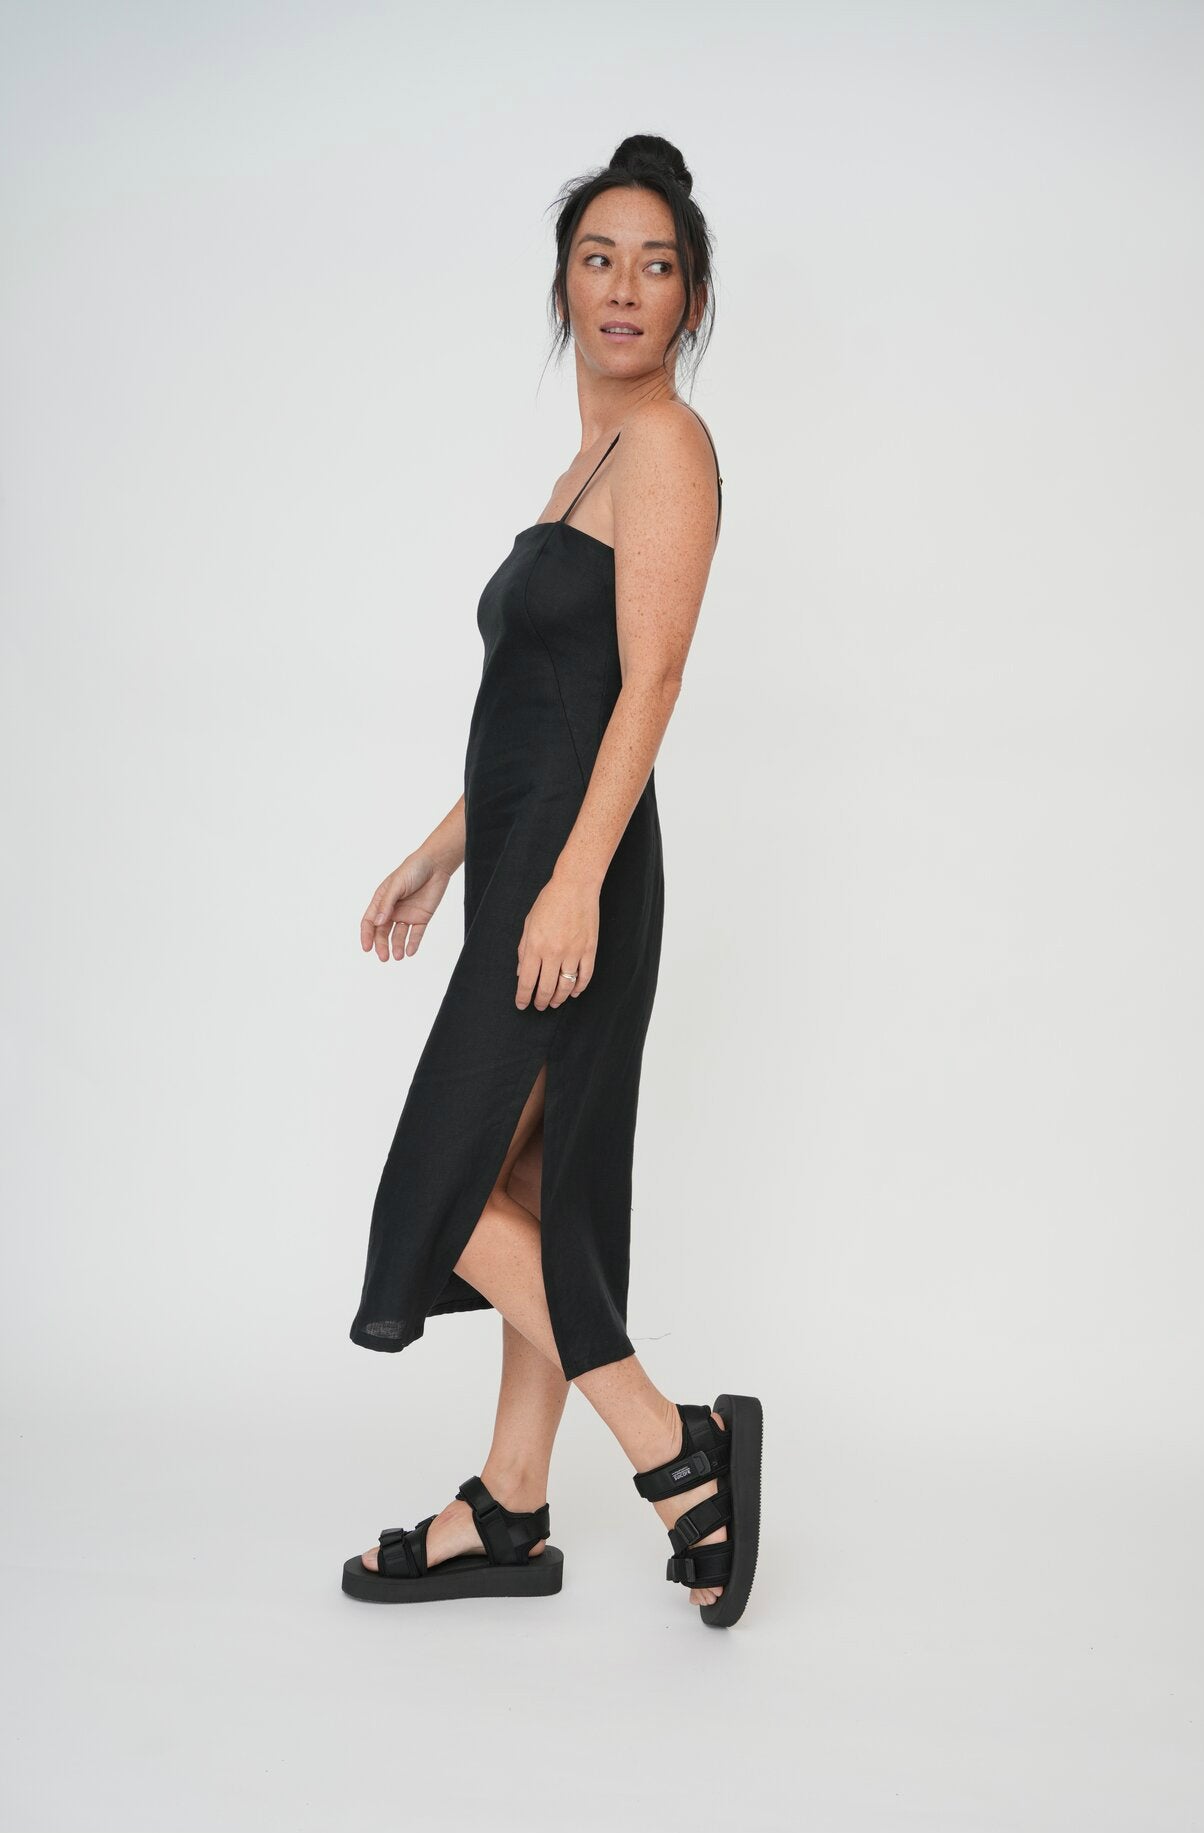 Black strappy dress with split